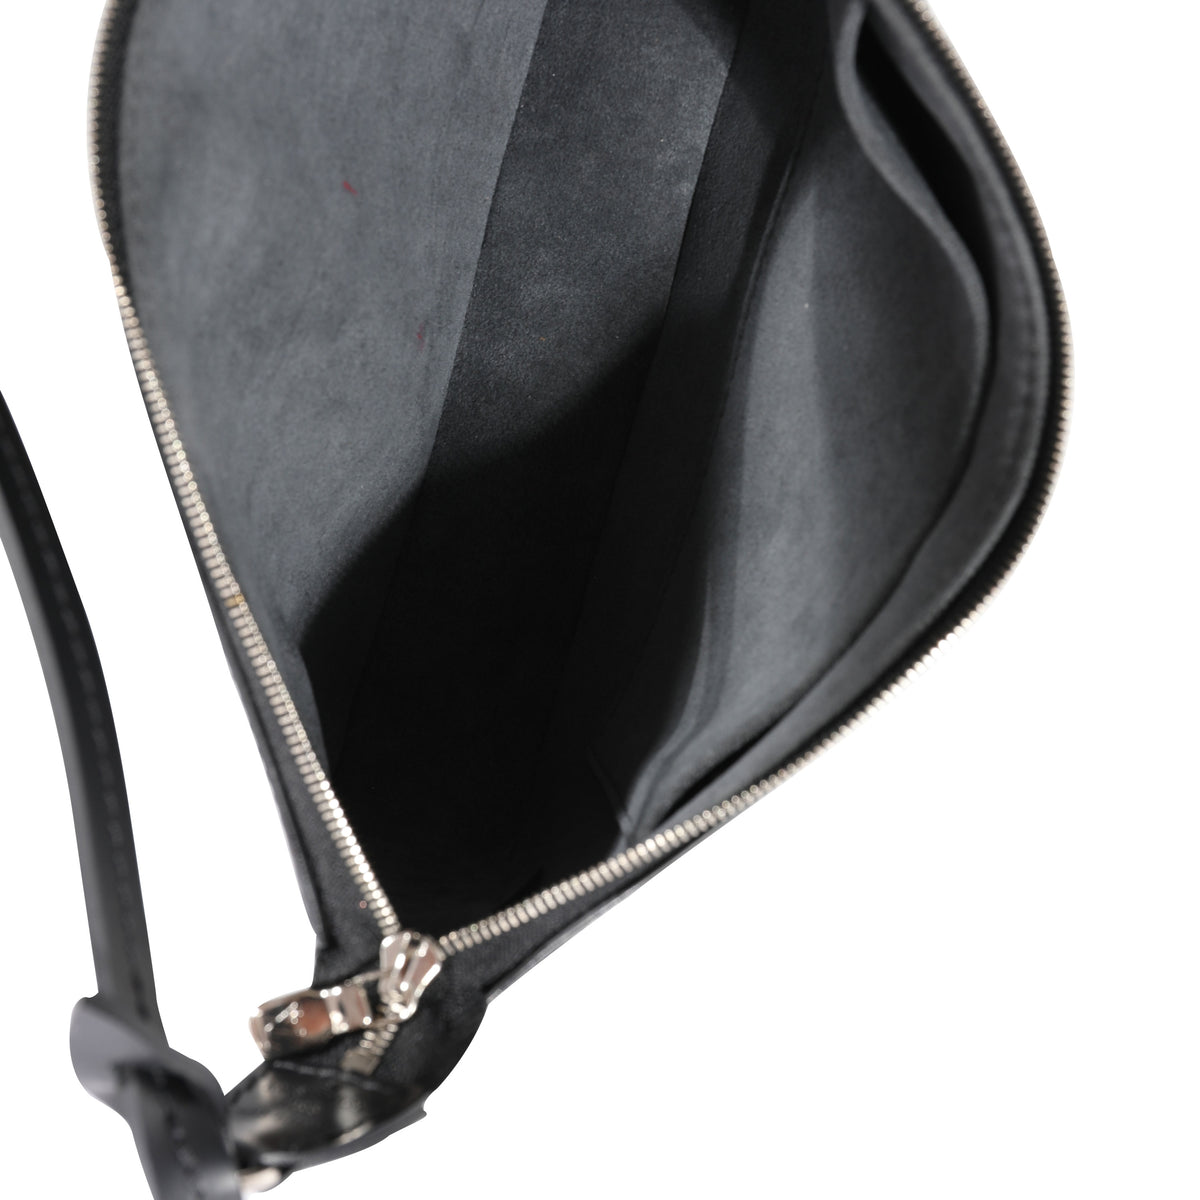 Louis Vuitton - Authenticated Pochette Accessoire Handbag - Cloth Brown Plain for Women, Very Good Condition